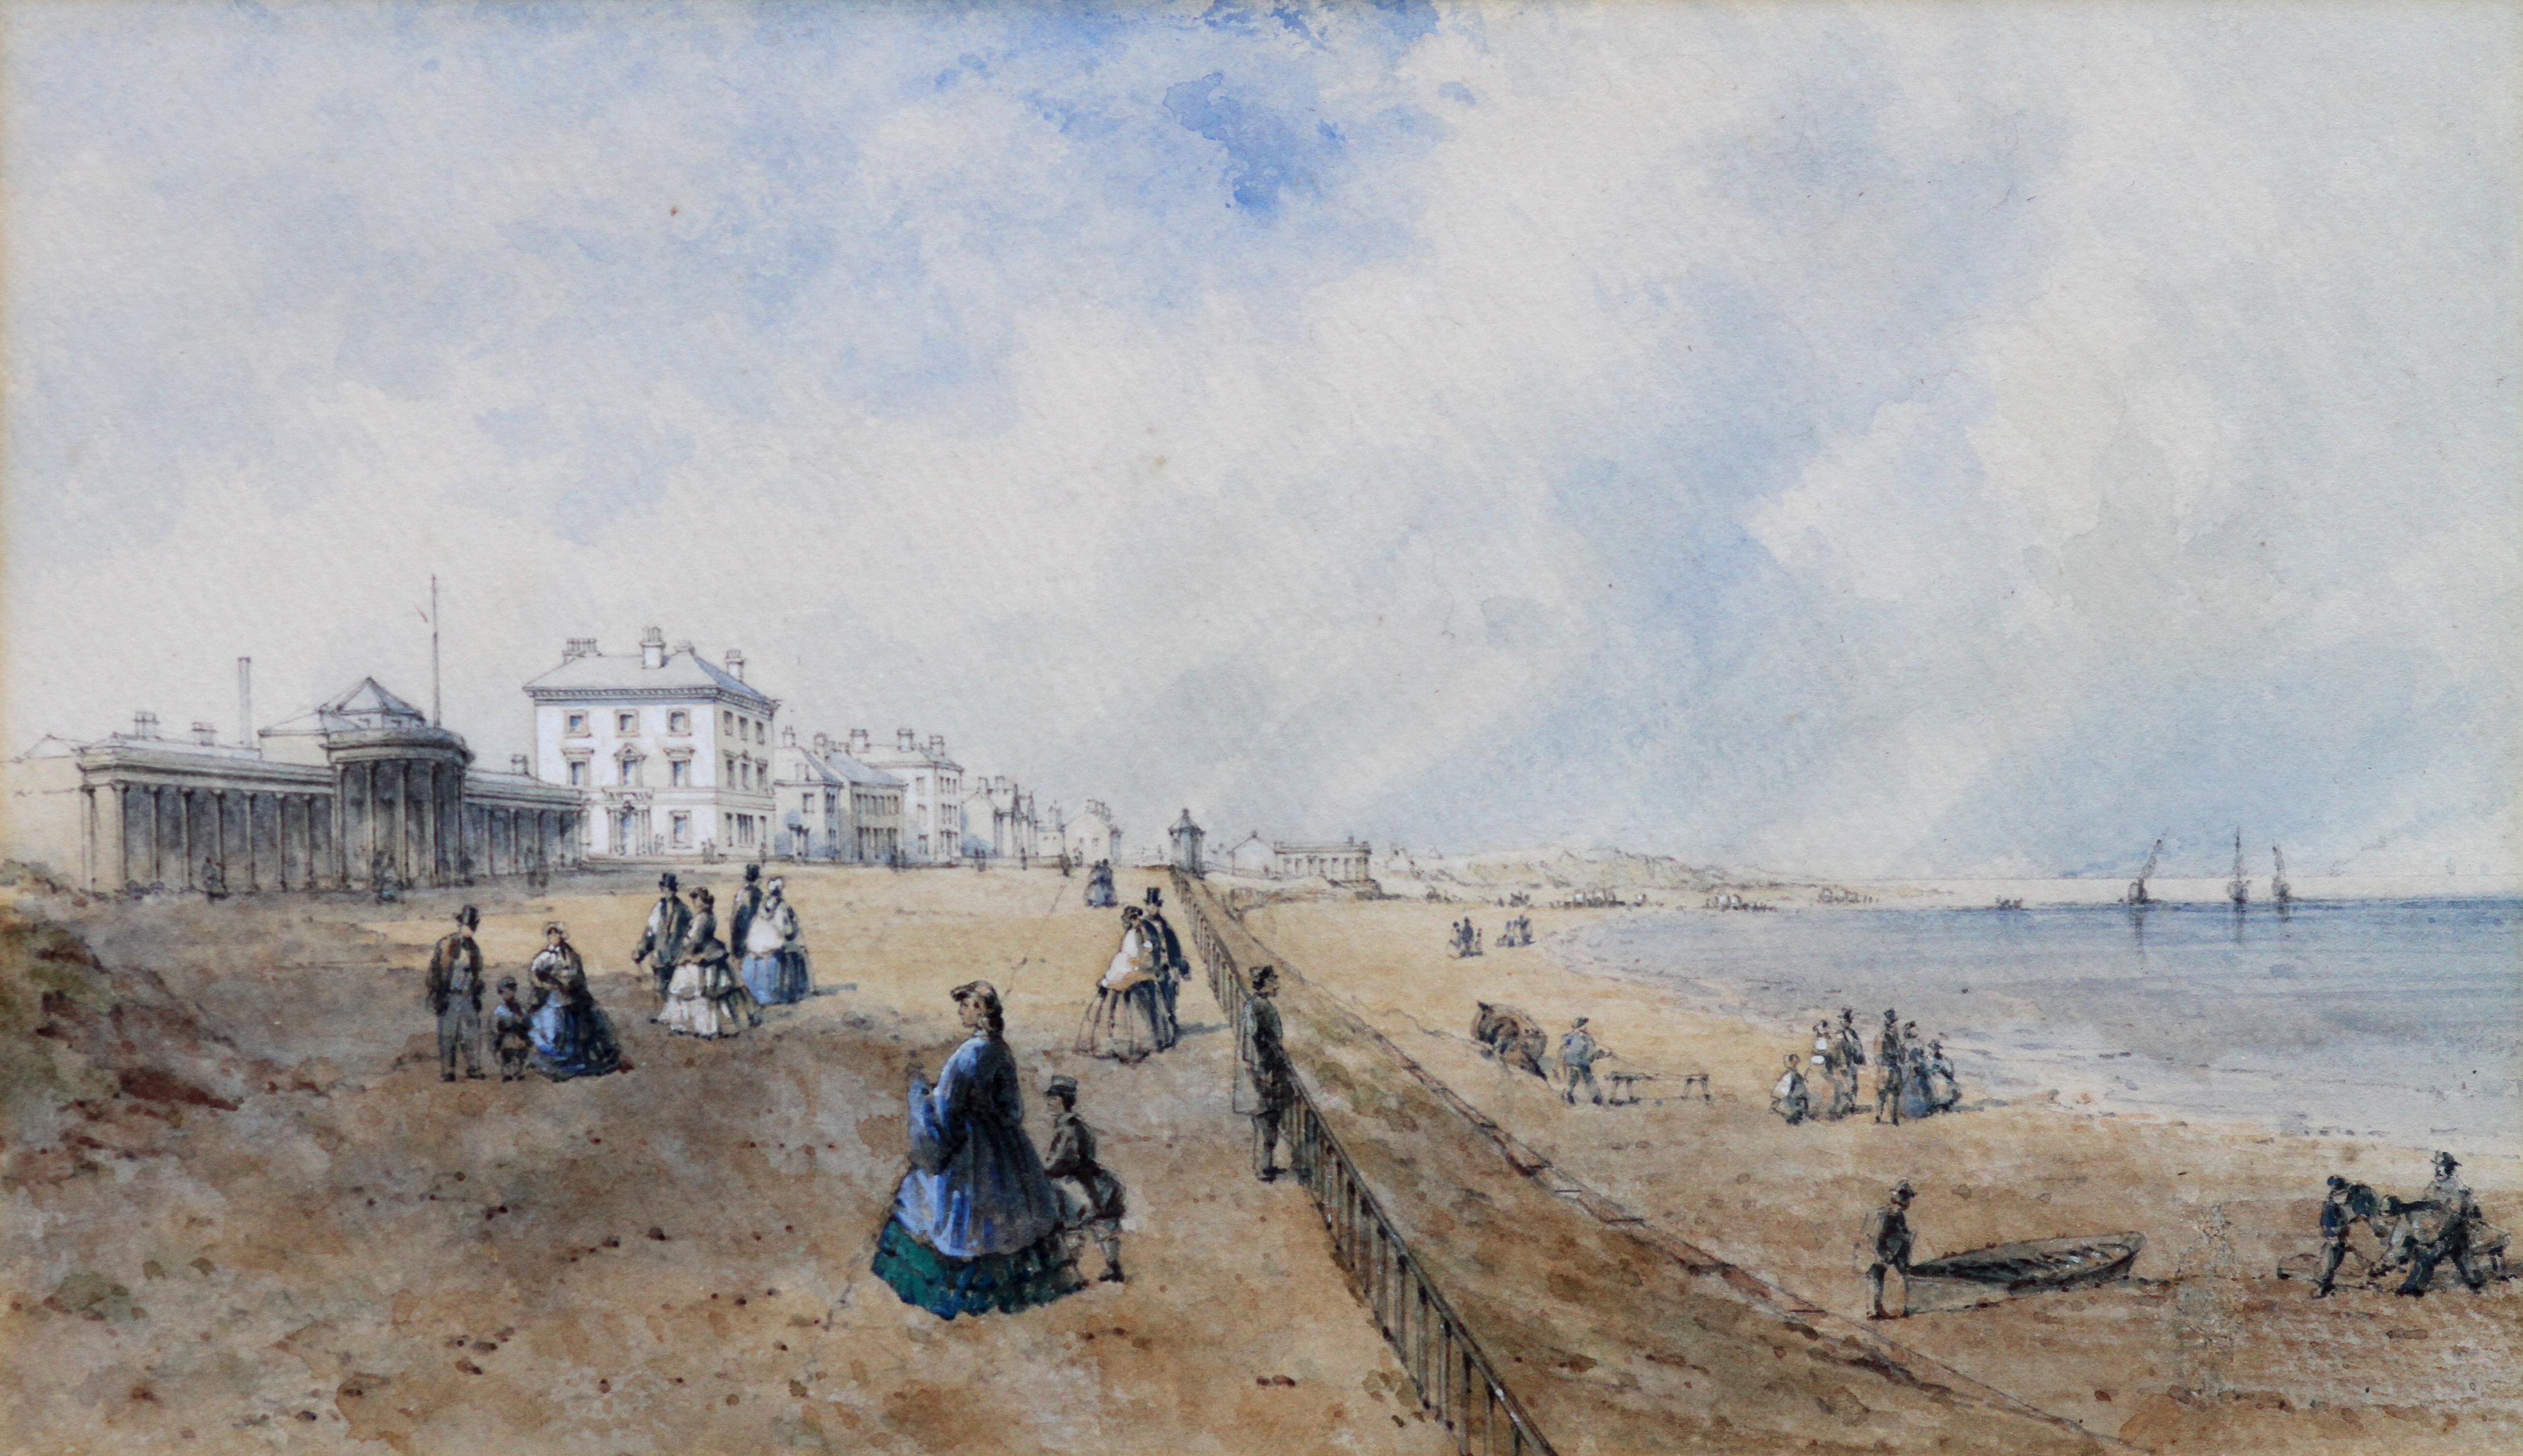 Promenade at Southport - British 19th century art coastal landscape watercolour For Sale 6